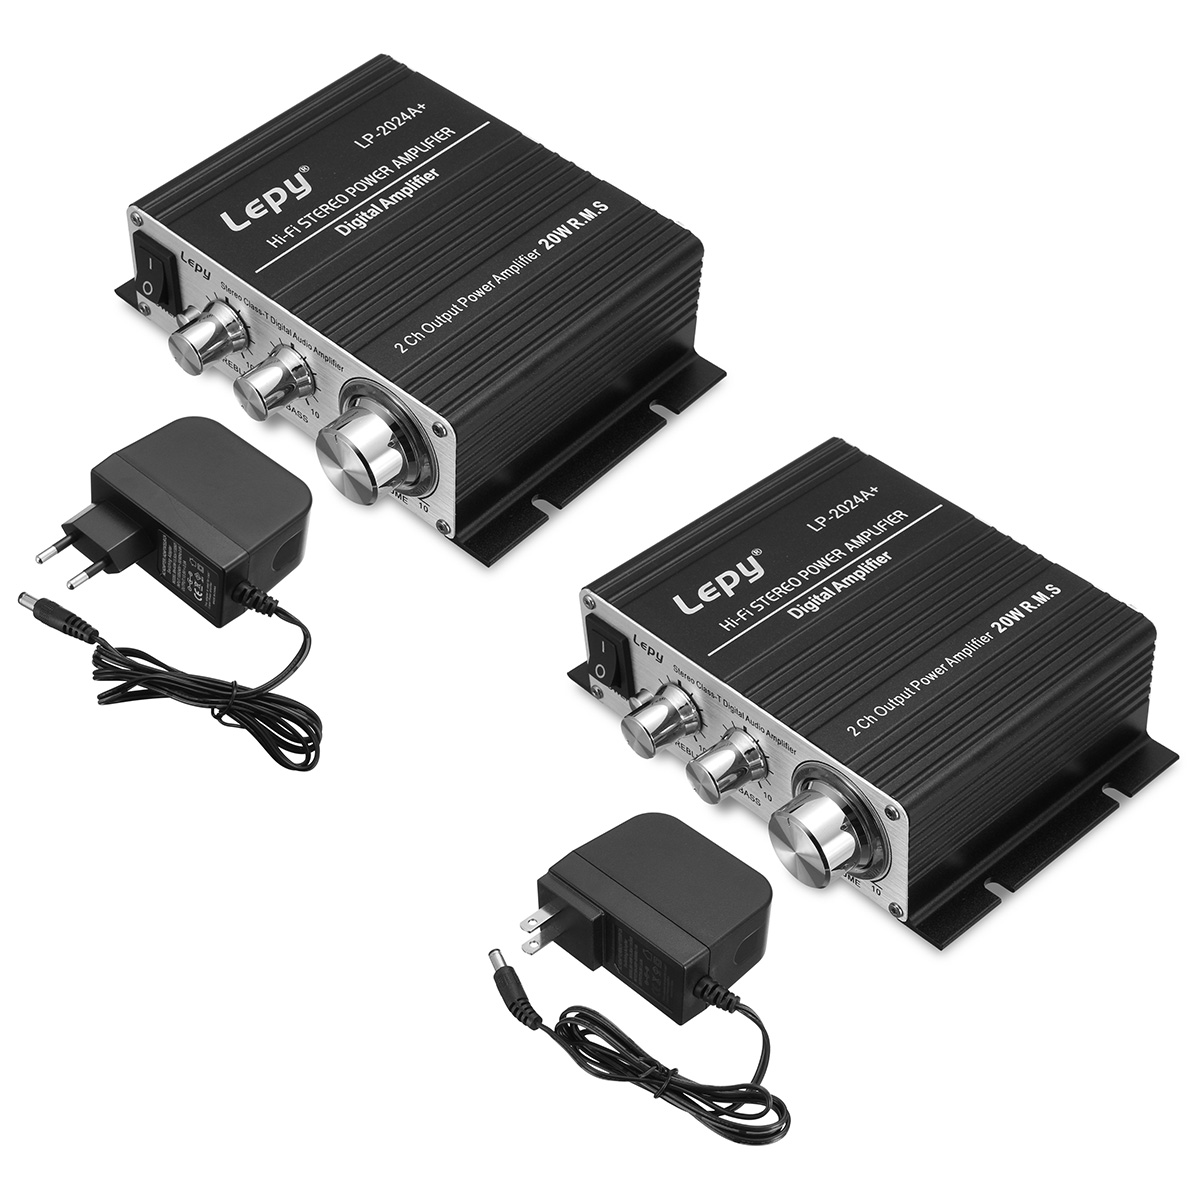 

Lepy LP-2024A+ 200Mv Treble Bass HIFI Mini Amplifier